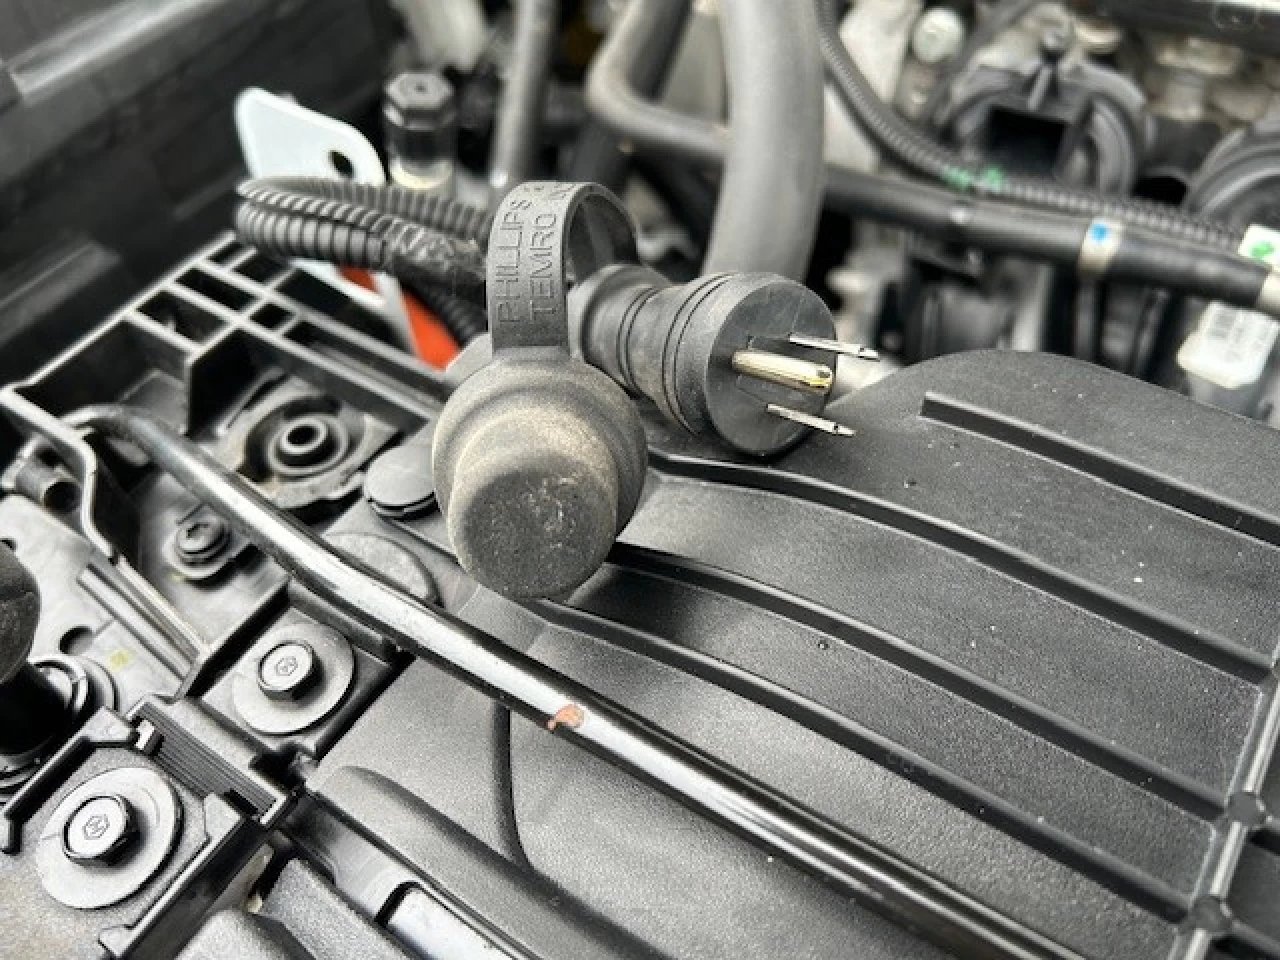 2021 Ford Escape Titanium Plug-In Hybrid Image principale